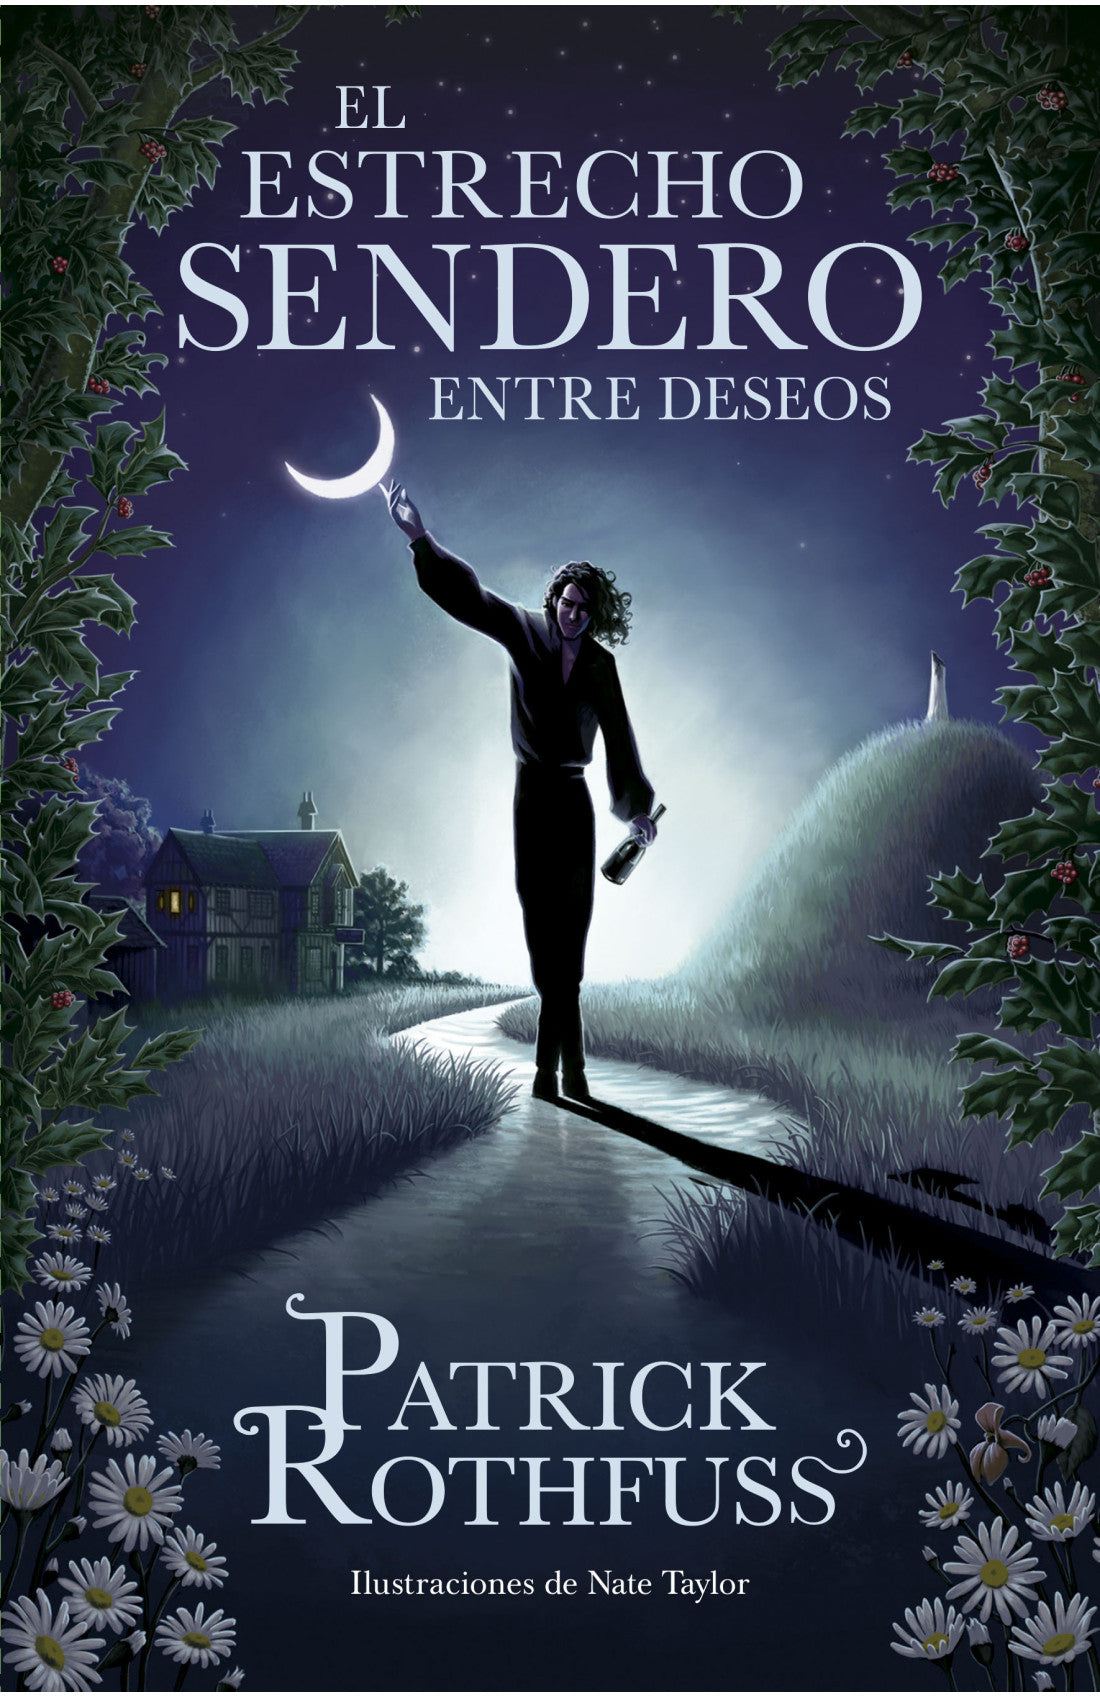 Libro Patrick Rothfuss - El estrecho sendero entre deseos